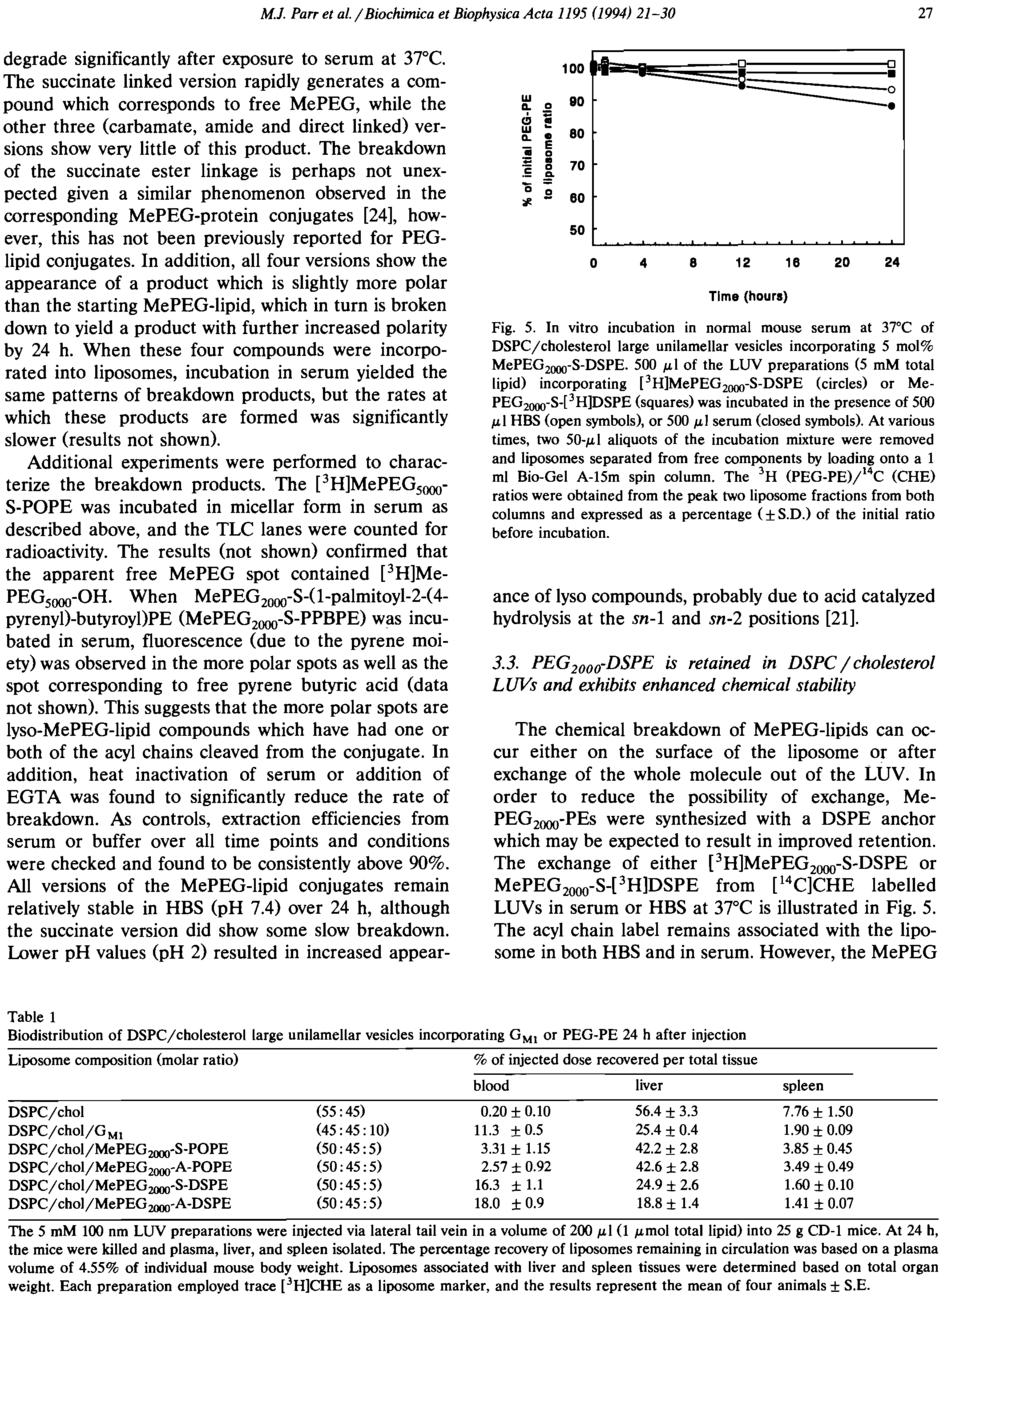 M.J. Parr et al. / Bichimica et Biphysica Acta 1195 (1994) 21-30 27 degrade significantly after expsure t serum at 37 C.